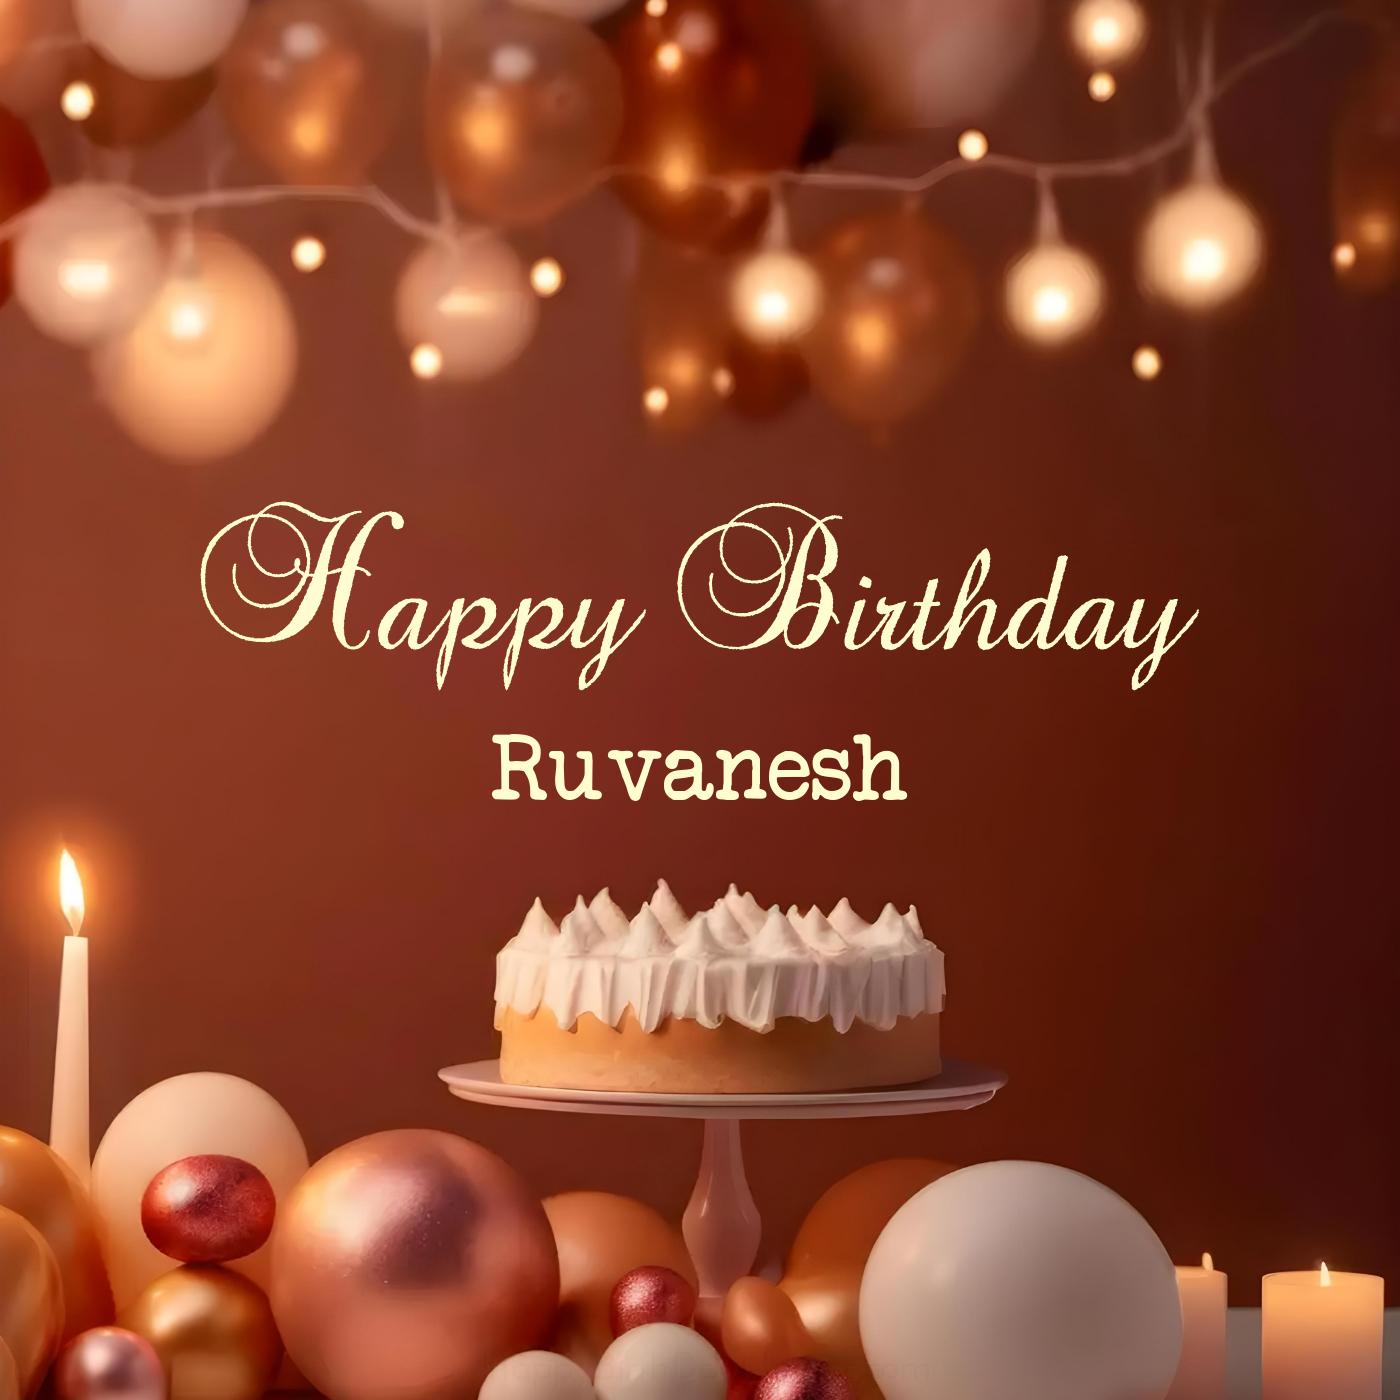 Happy Birthday Ruvanesh Cake Candles Card